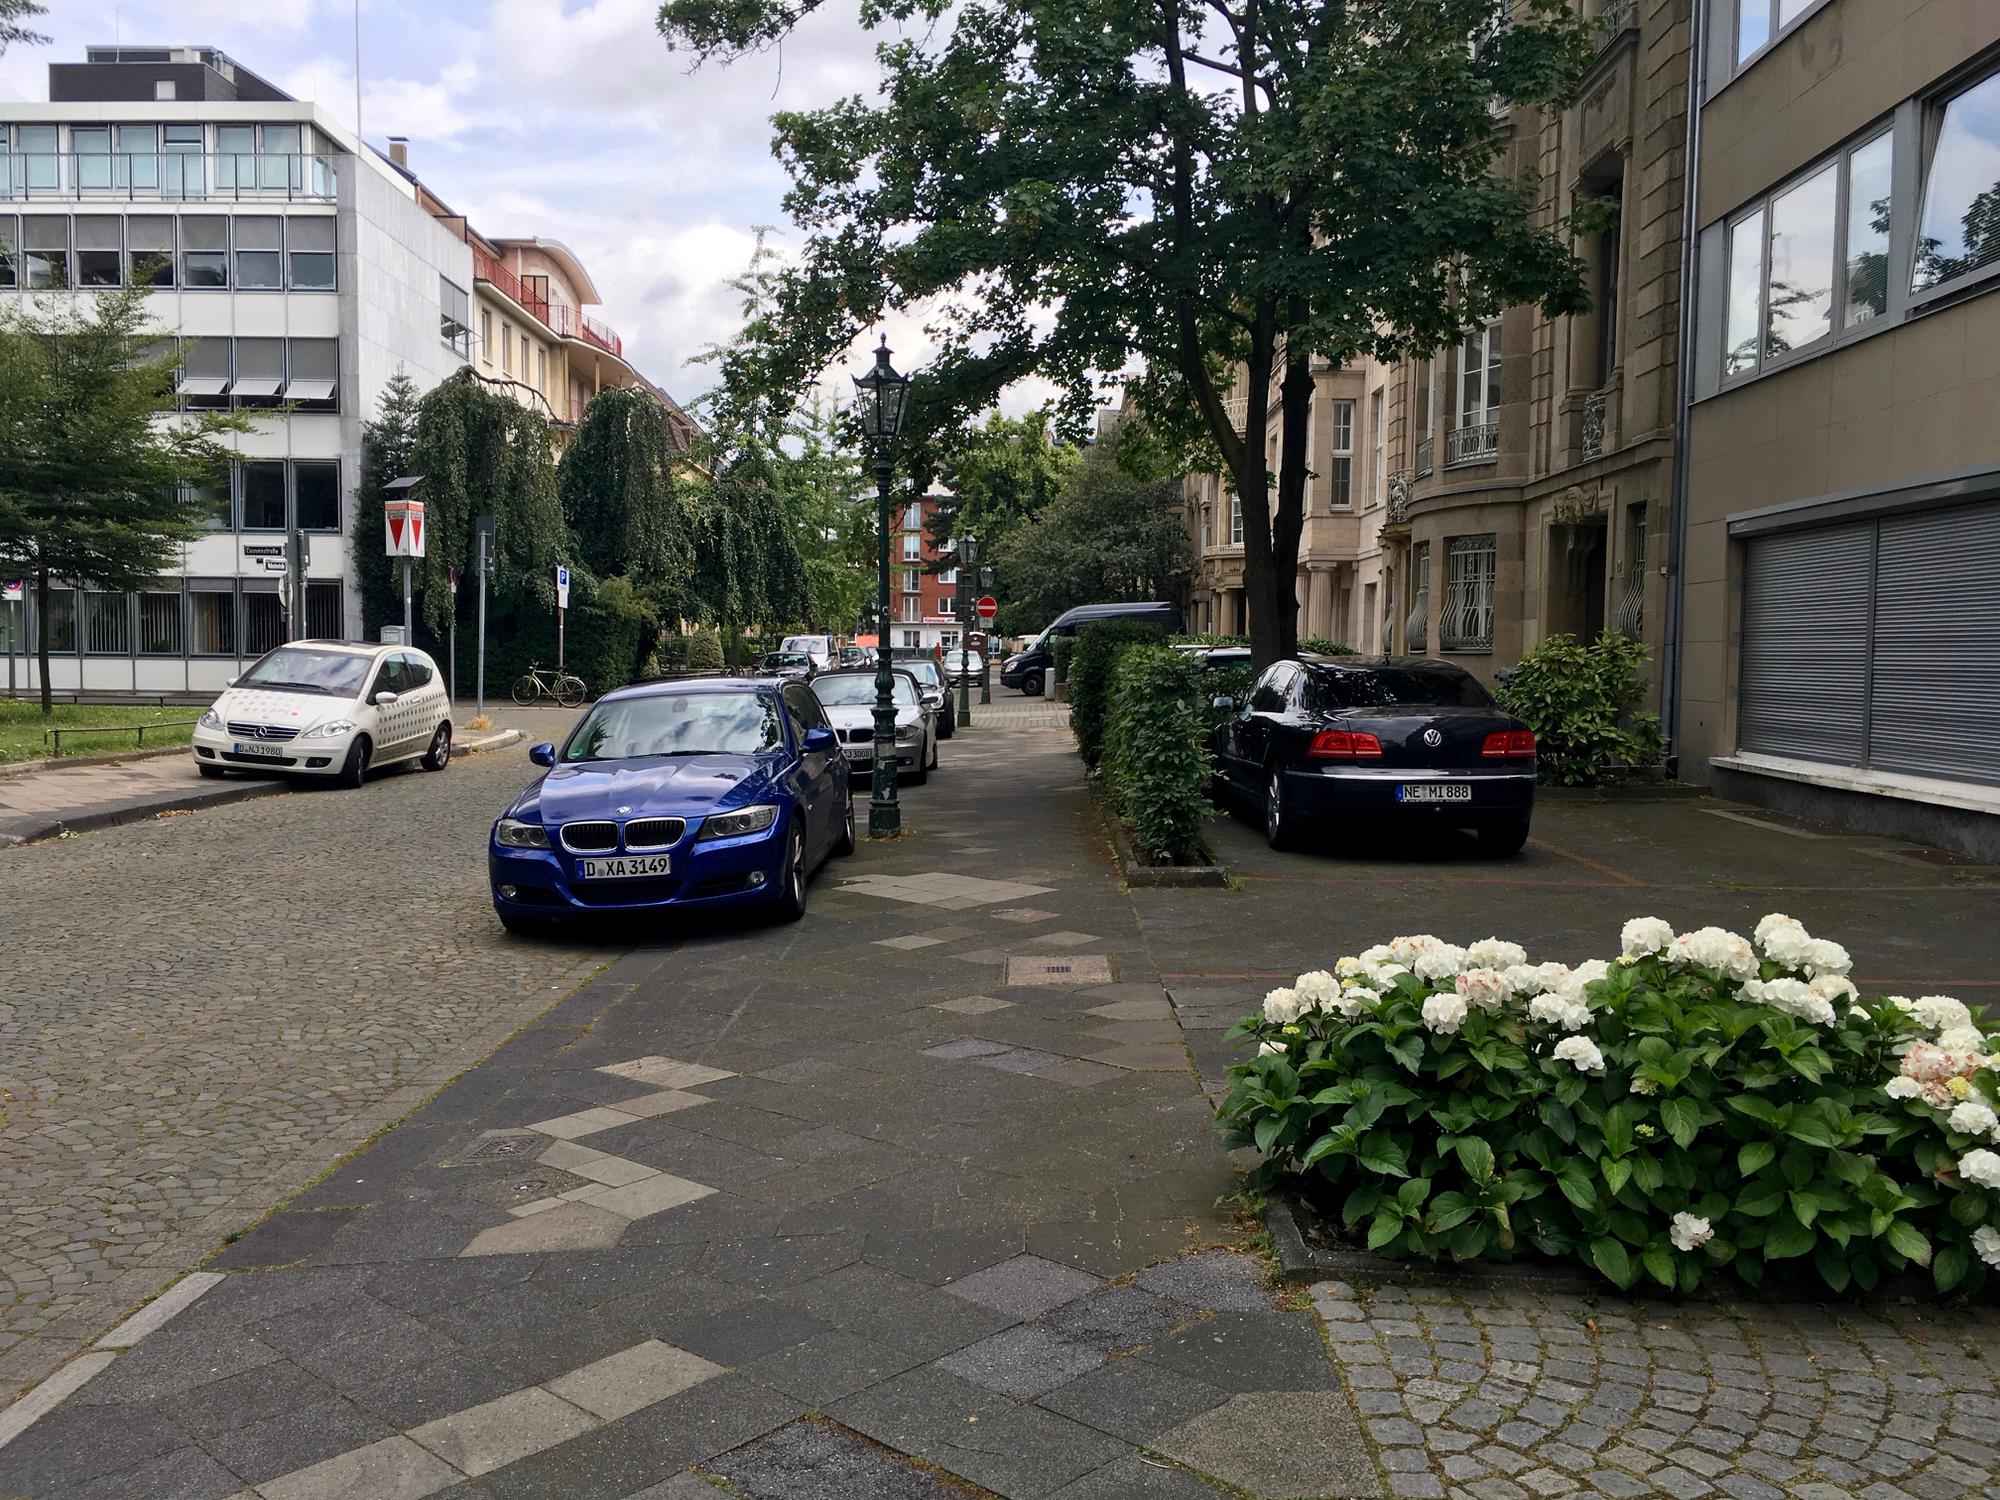 🇩🇪 Düsseldorf, Germany, July 2016.